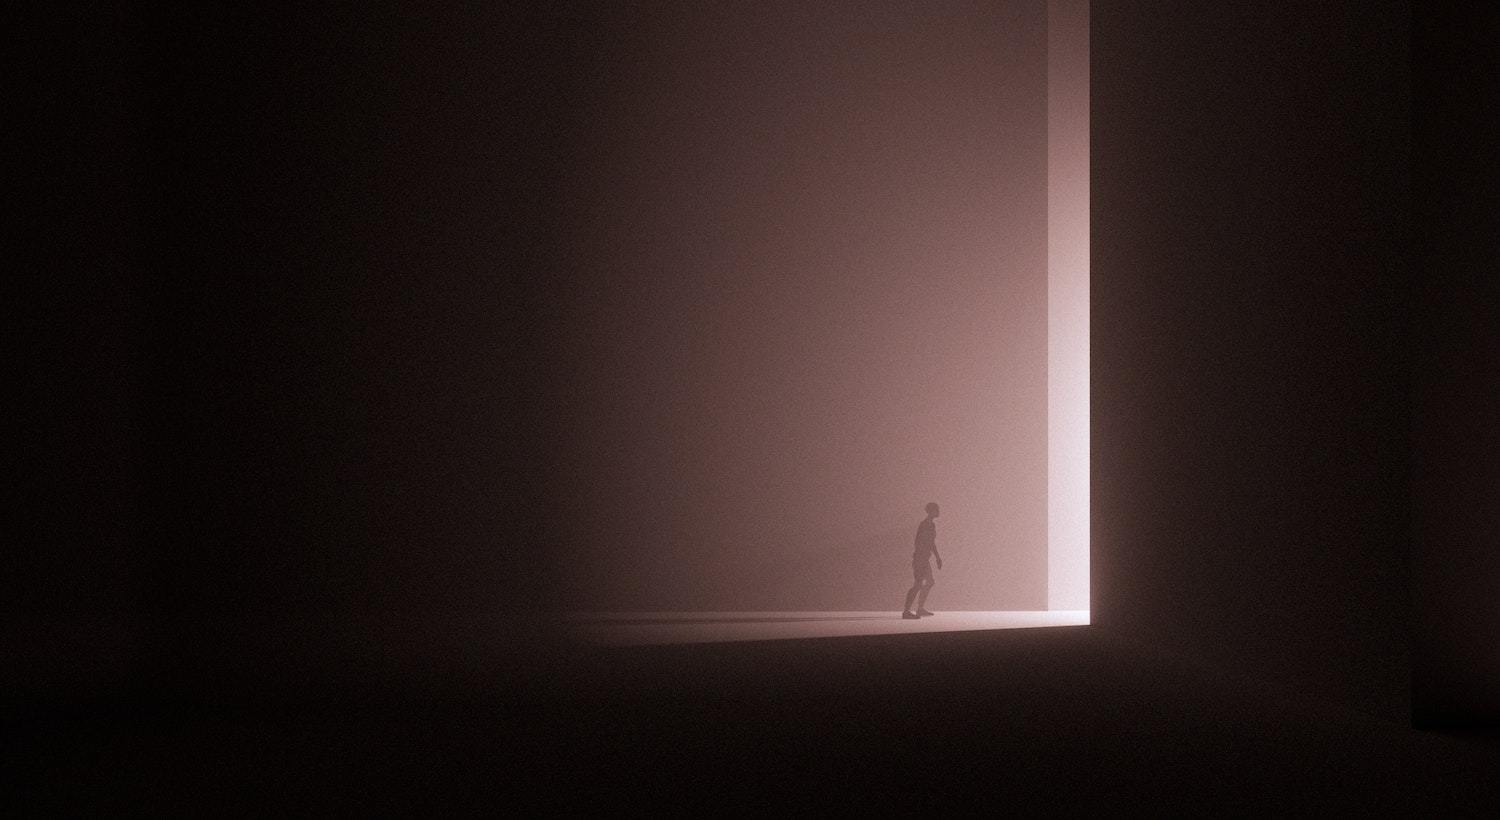 imagem de uma pessoa no escuro, se aproximando de uma porta, simbolizando Sonhar com Morte segundo a Bíblia